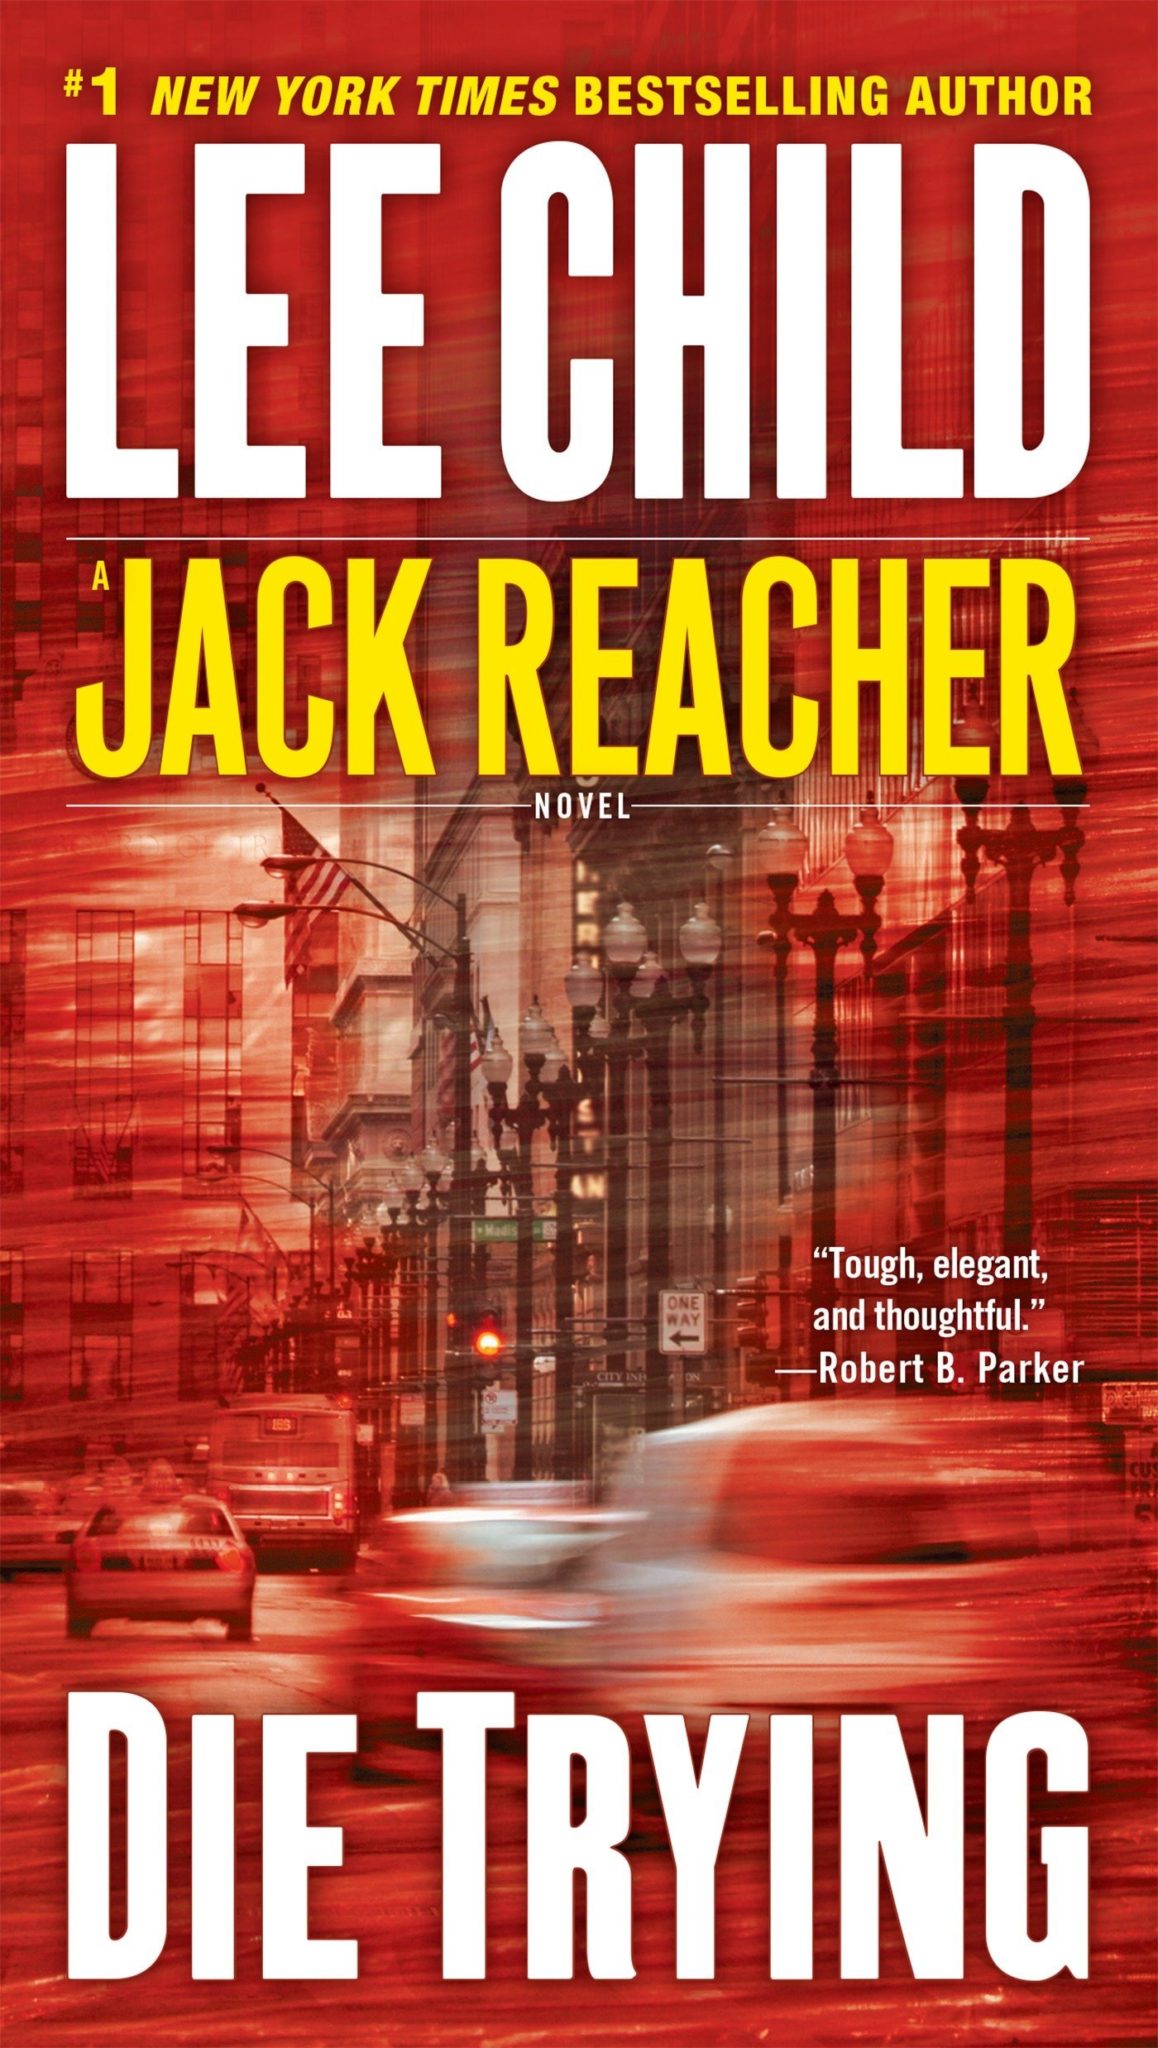 Libri di Jack Reacher in ordine 2